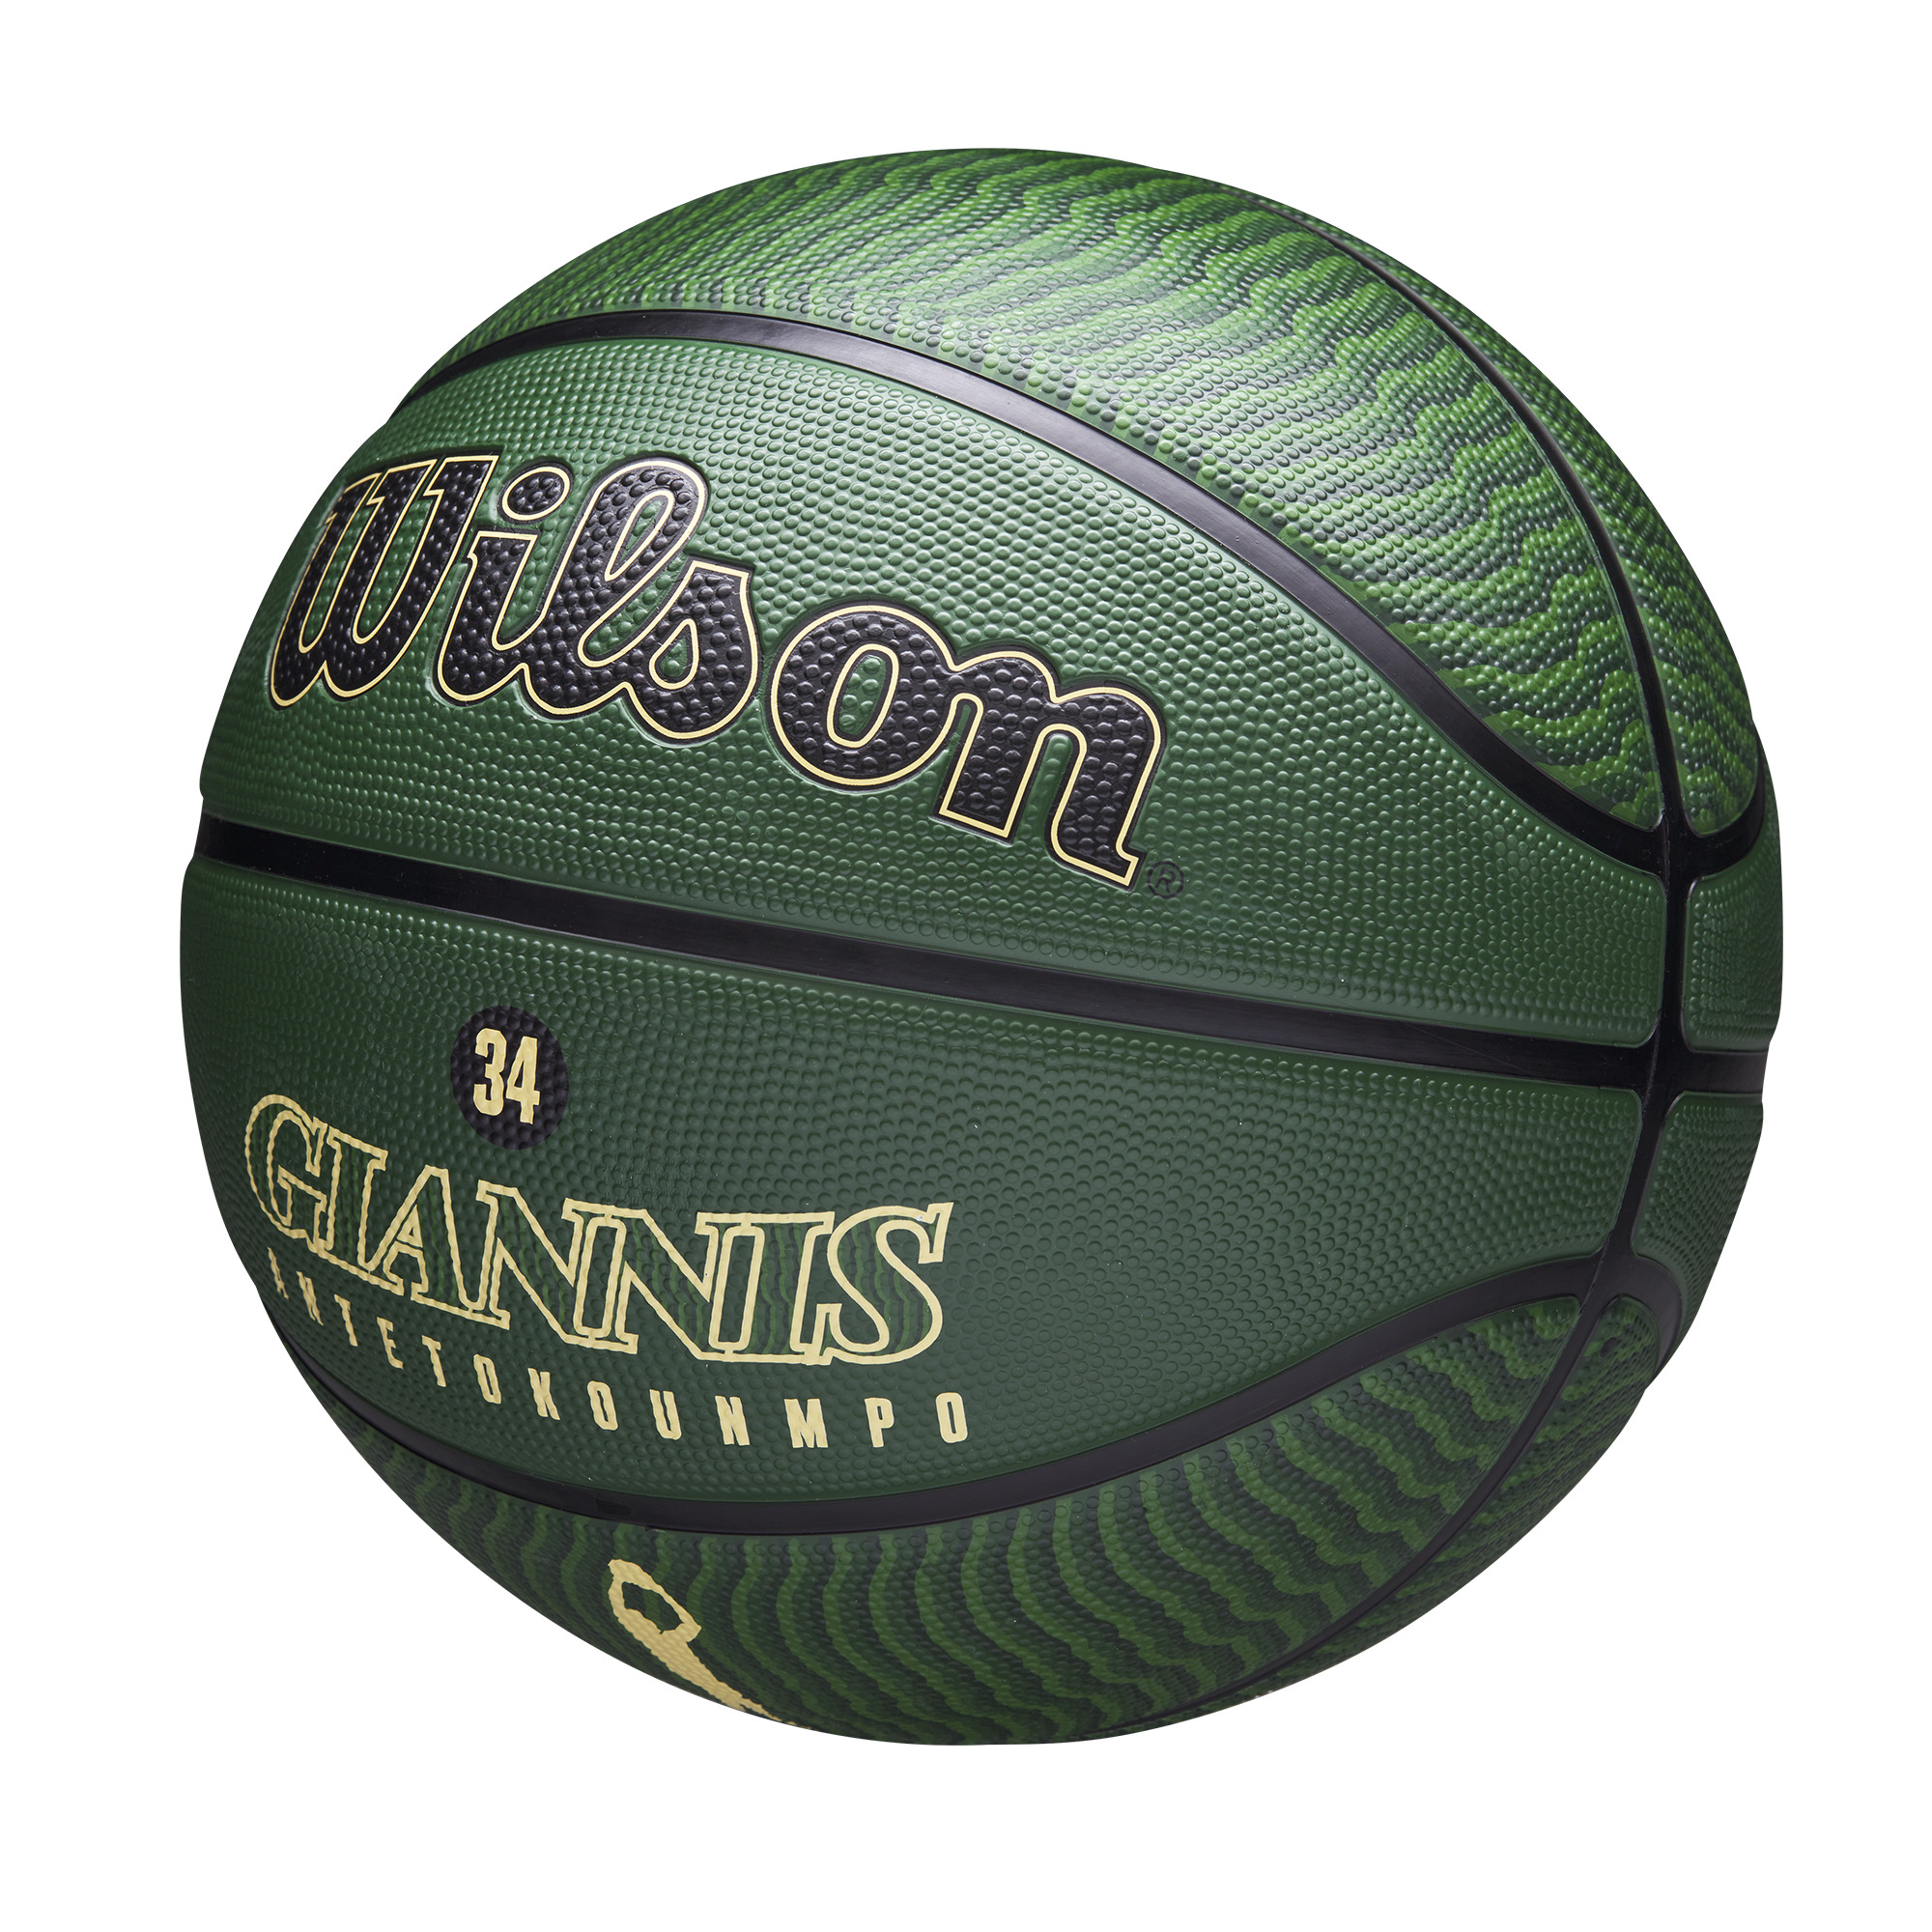 Ballons de basket NBA Player Giannis Antetokounmpo